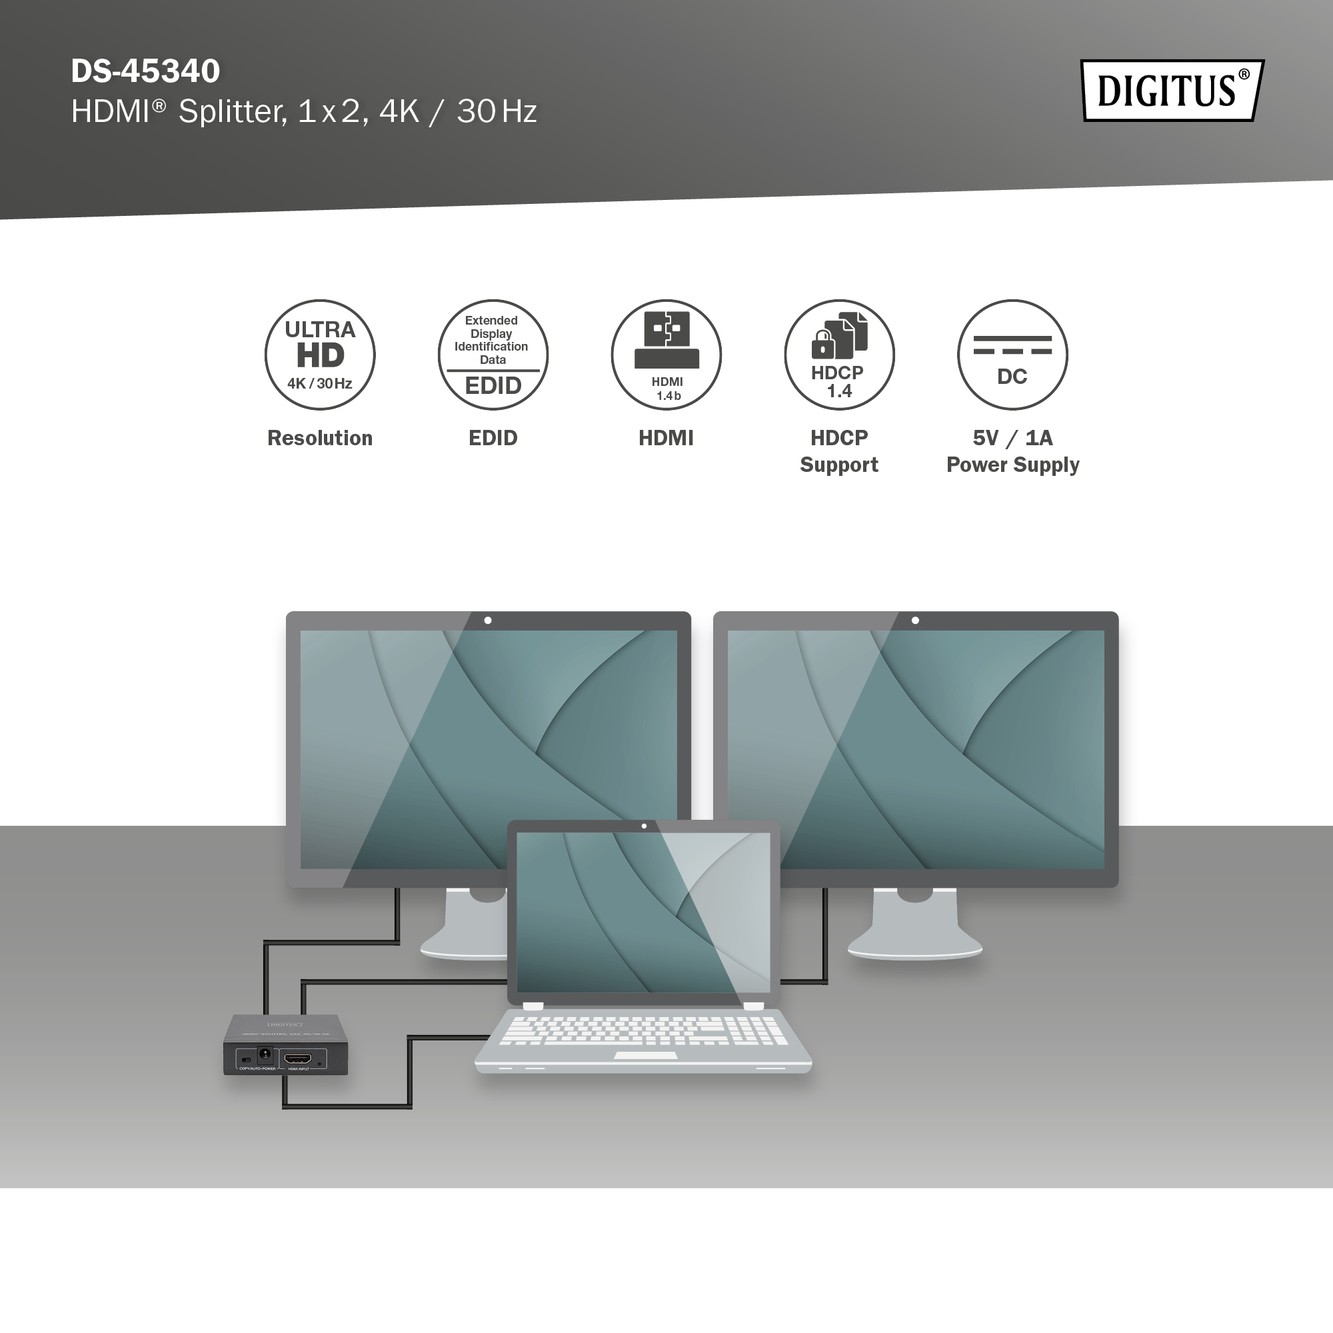 DS-45340  Splitter HDMI  2 Puertos 4K Ultra HD 30Hz  DIGITUS, Soporta EDID (2 modos) - 1: Copia -salida HDMI 1/2: modo Auto - Compare & Cr